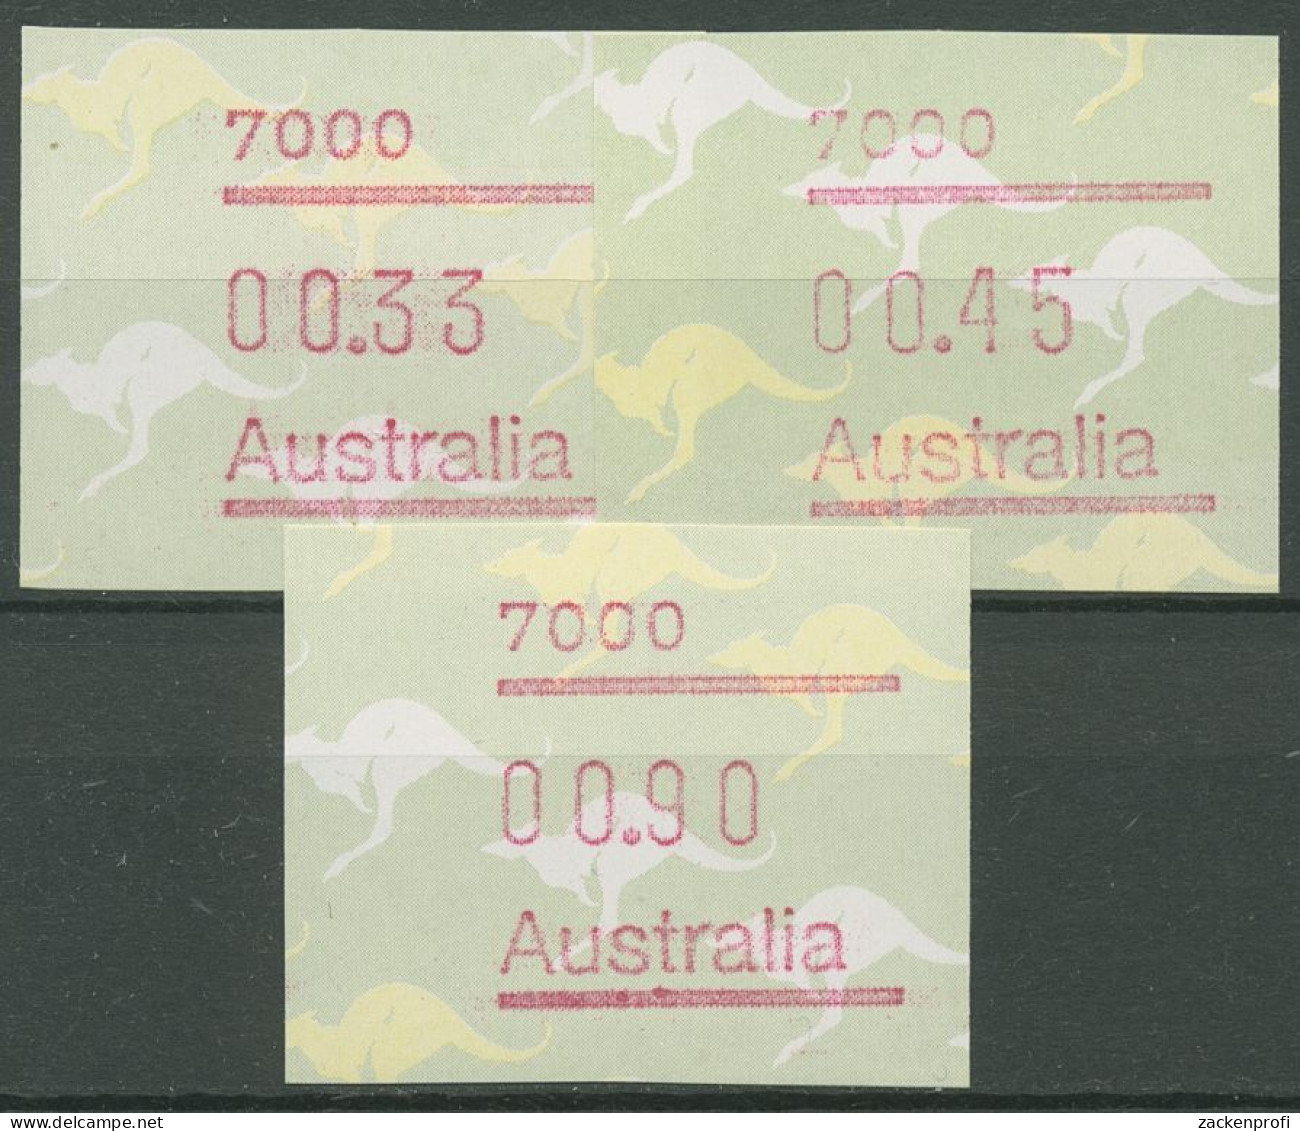 Australien 1985 Känguruh Tastensatz Automatenmarke 4 S1, 7000 Postfrisch - Timbres De Distributeurs [ATM]